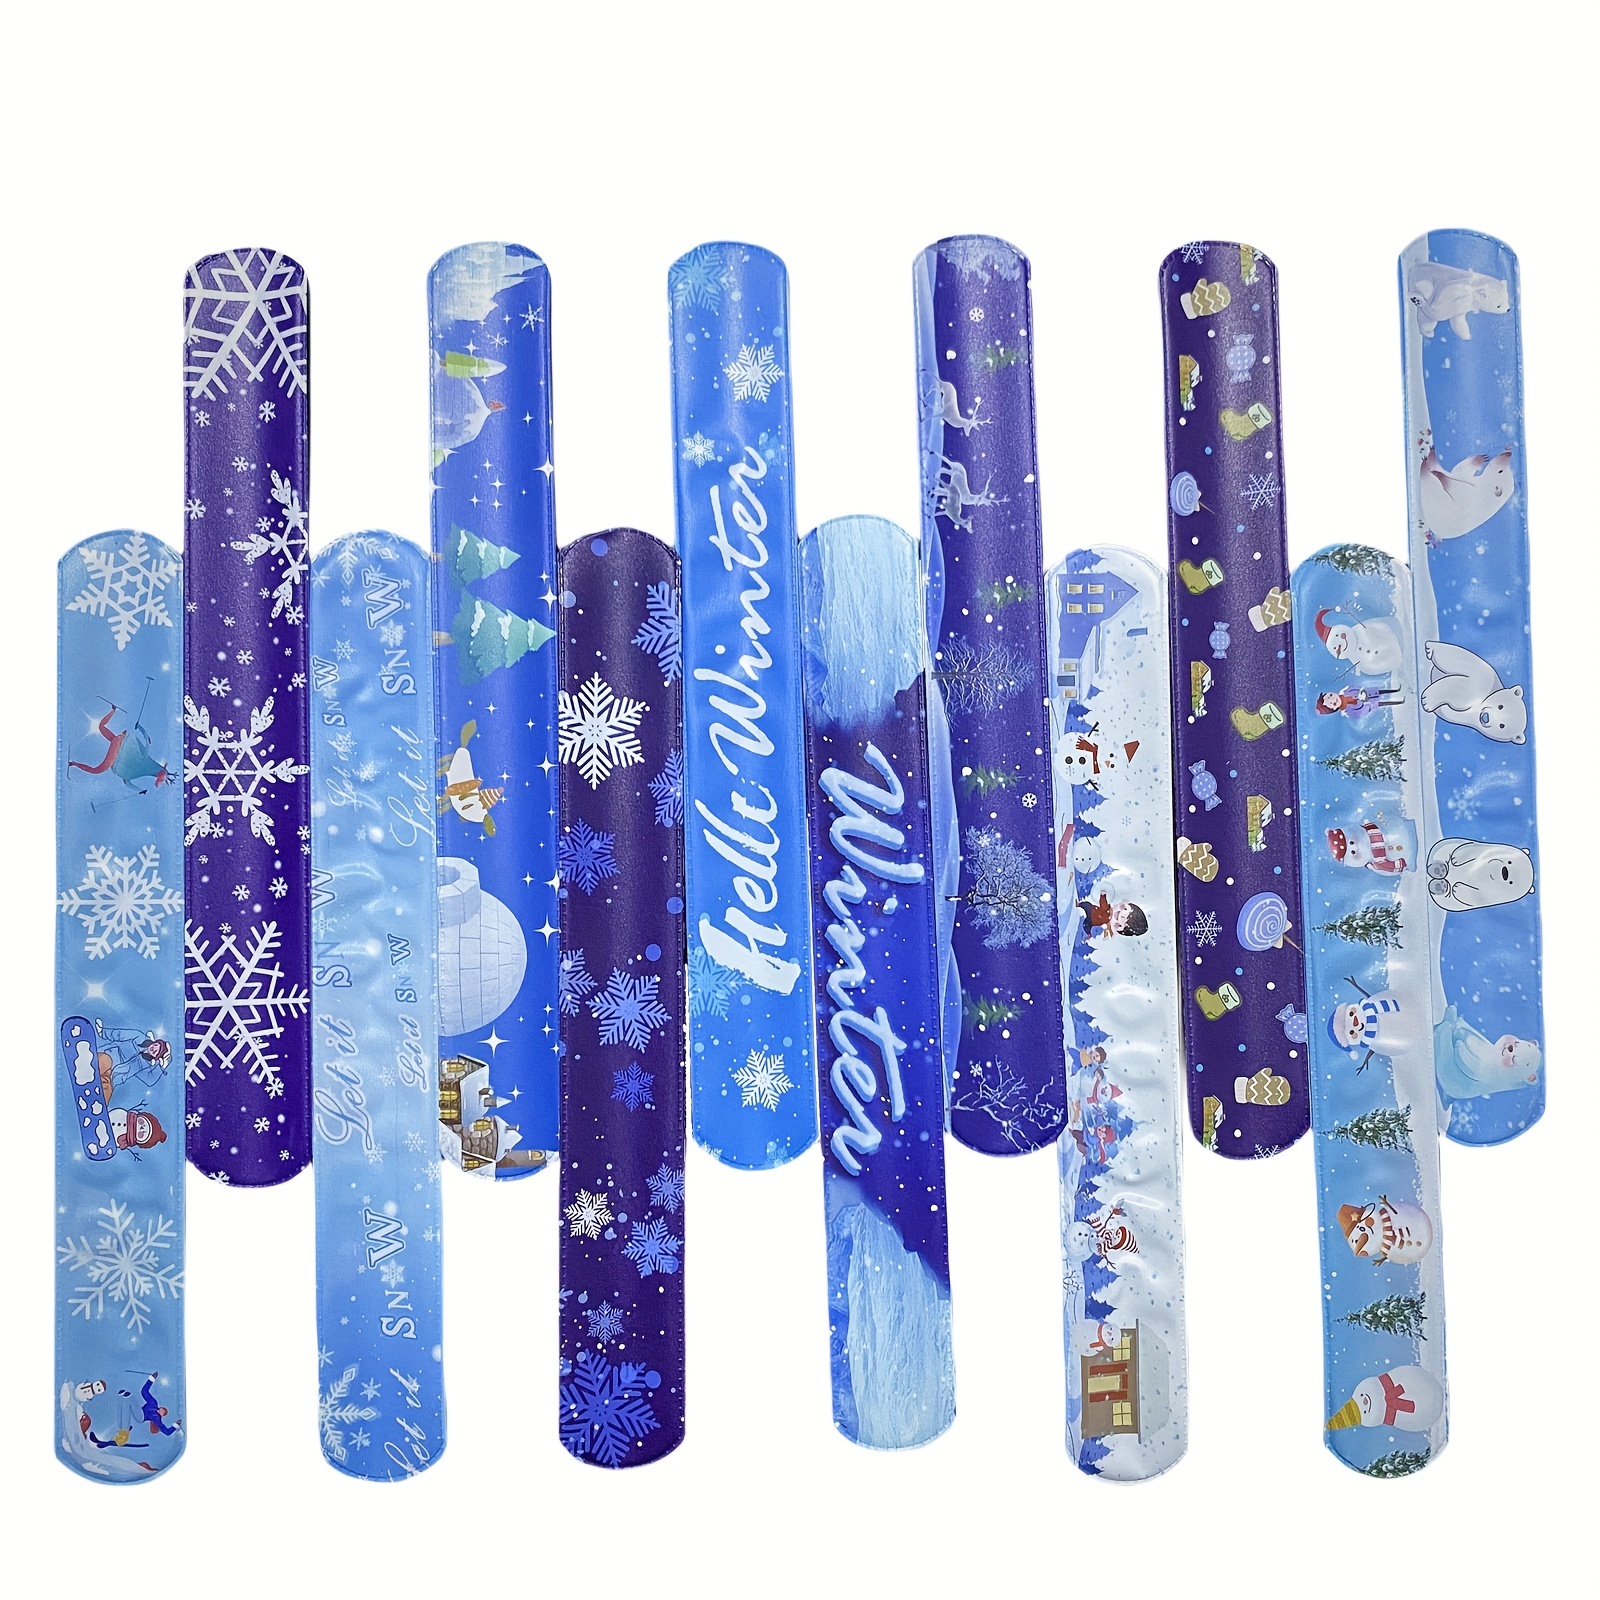 12pcs Snowflake Slap Bracelets, Winter Theme Slap Bracelets, Children's Party Favors, Suitable for Children's Winter Theme Party Favors, 12 Styles